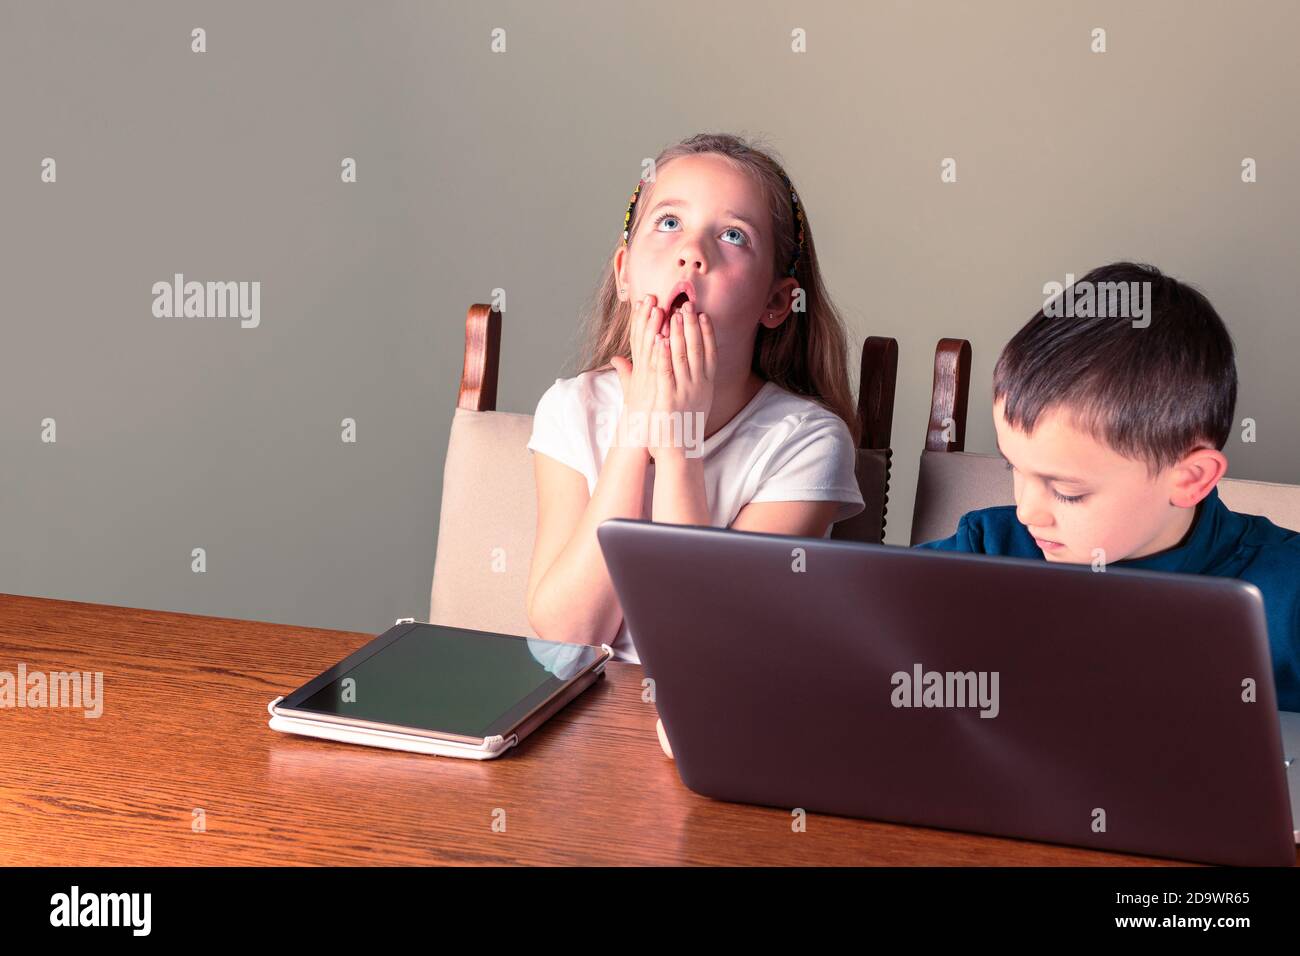 Carino bambini che usano il computer portatile e tablet, la ragazza guarda disperatamente in su tenendo le mani sulla bocca; homeschooling o tema di tecnologia Foto Stock